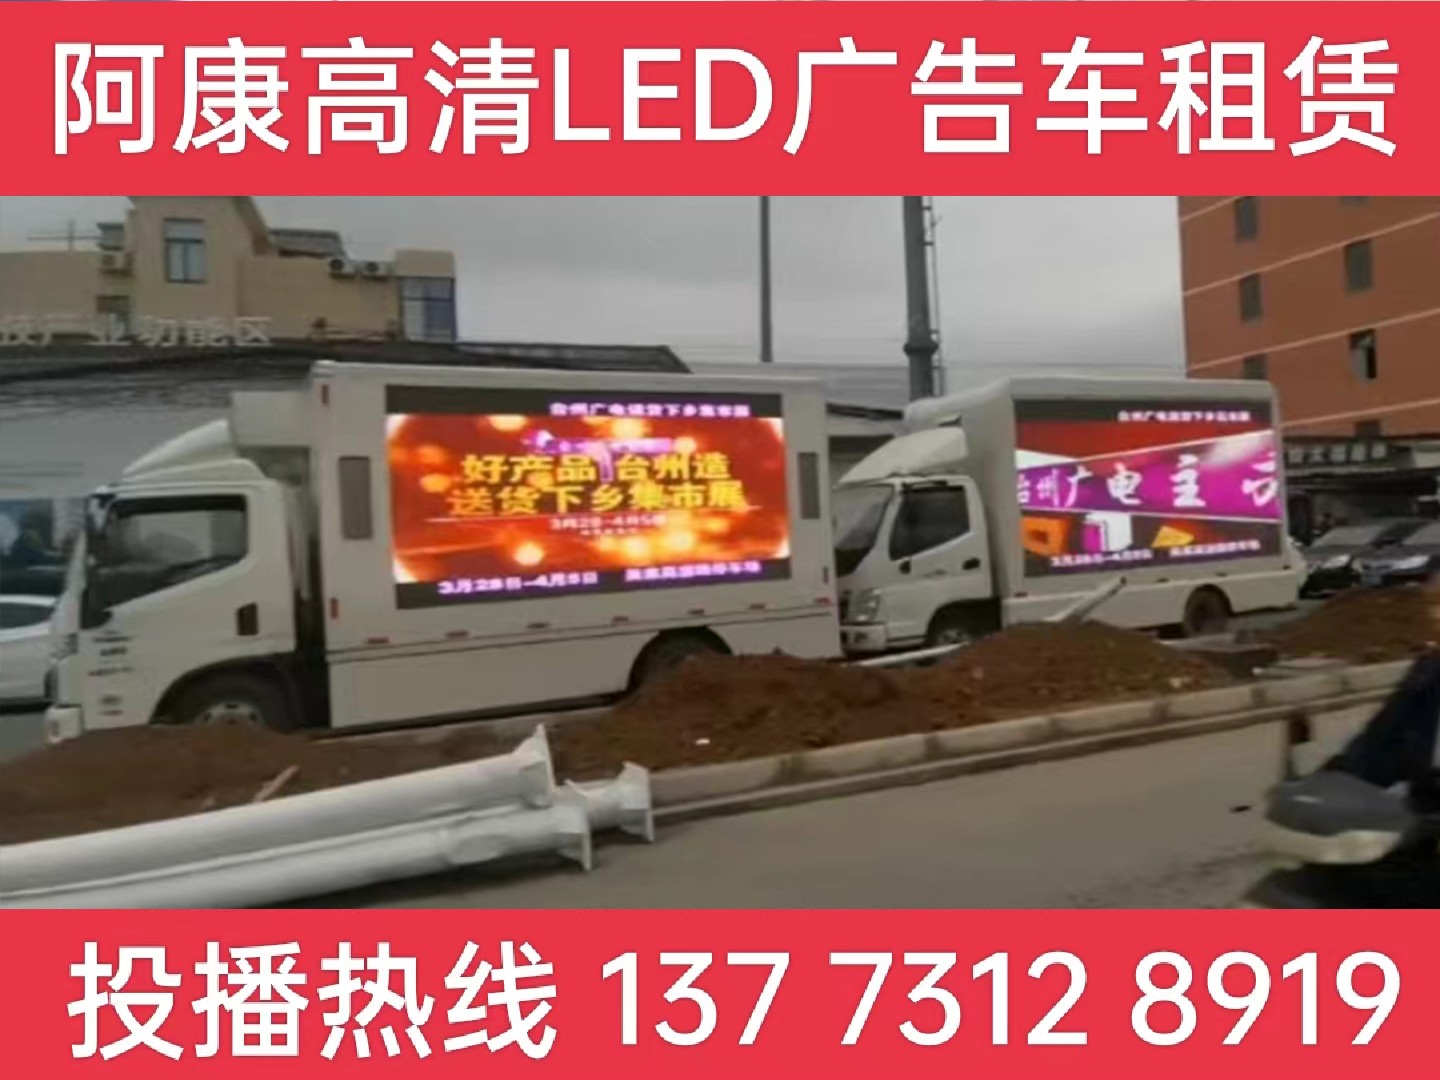 崇明岛LED宣传车租赁